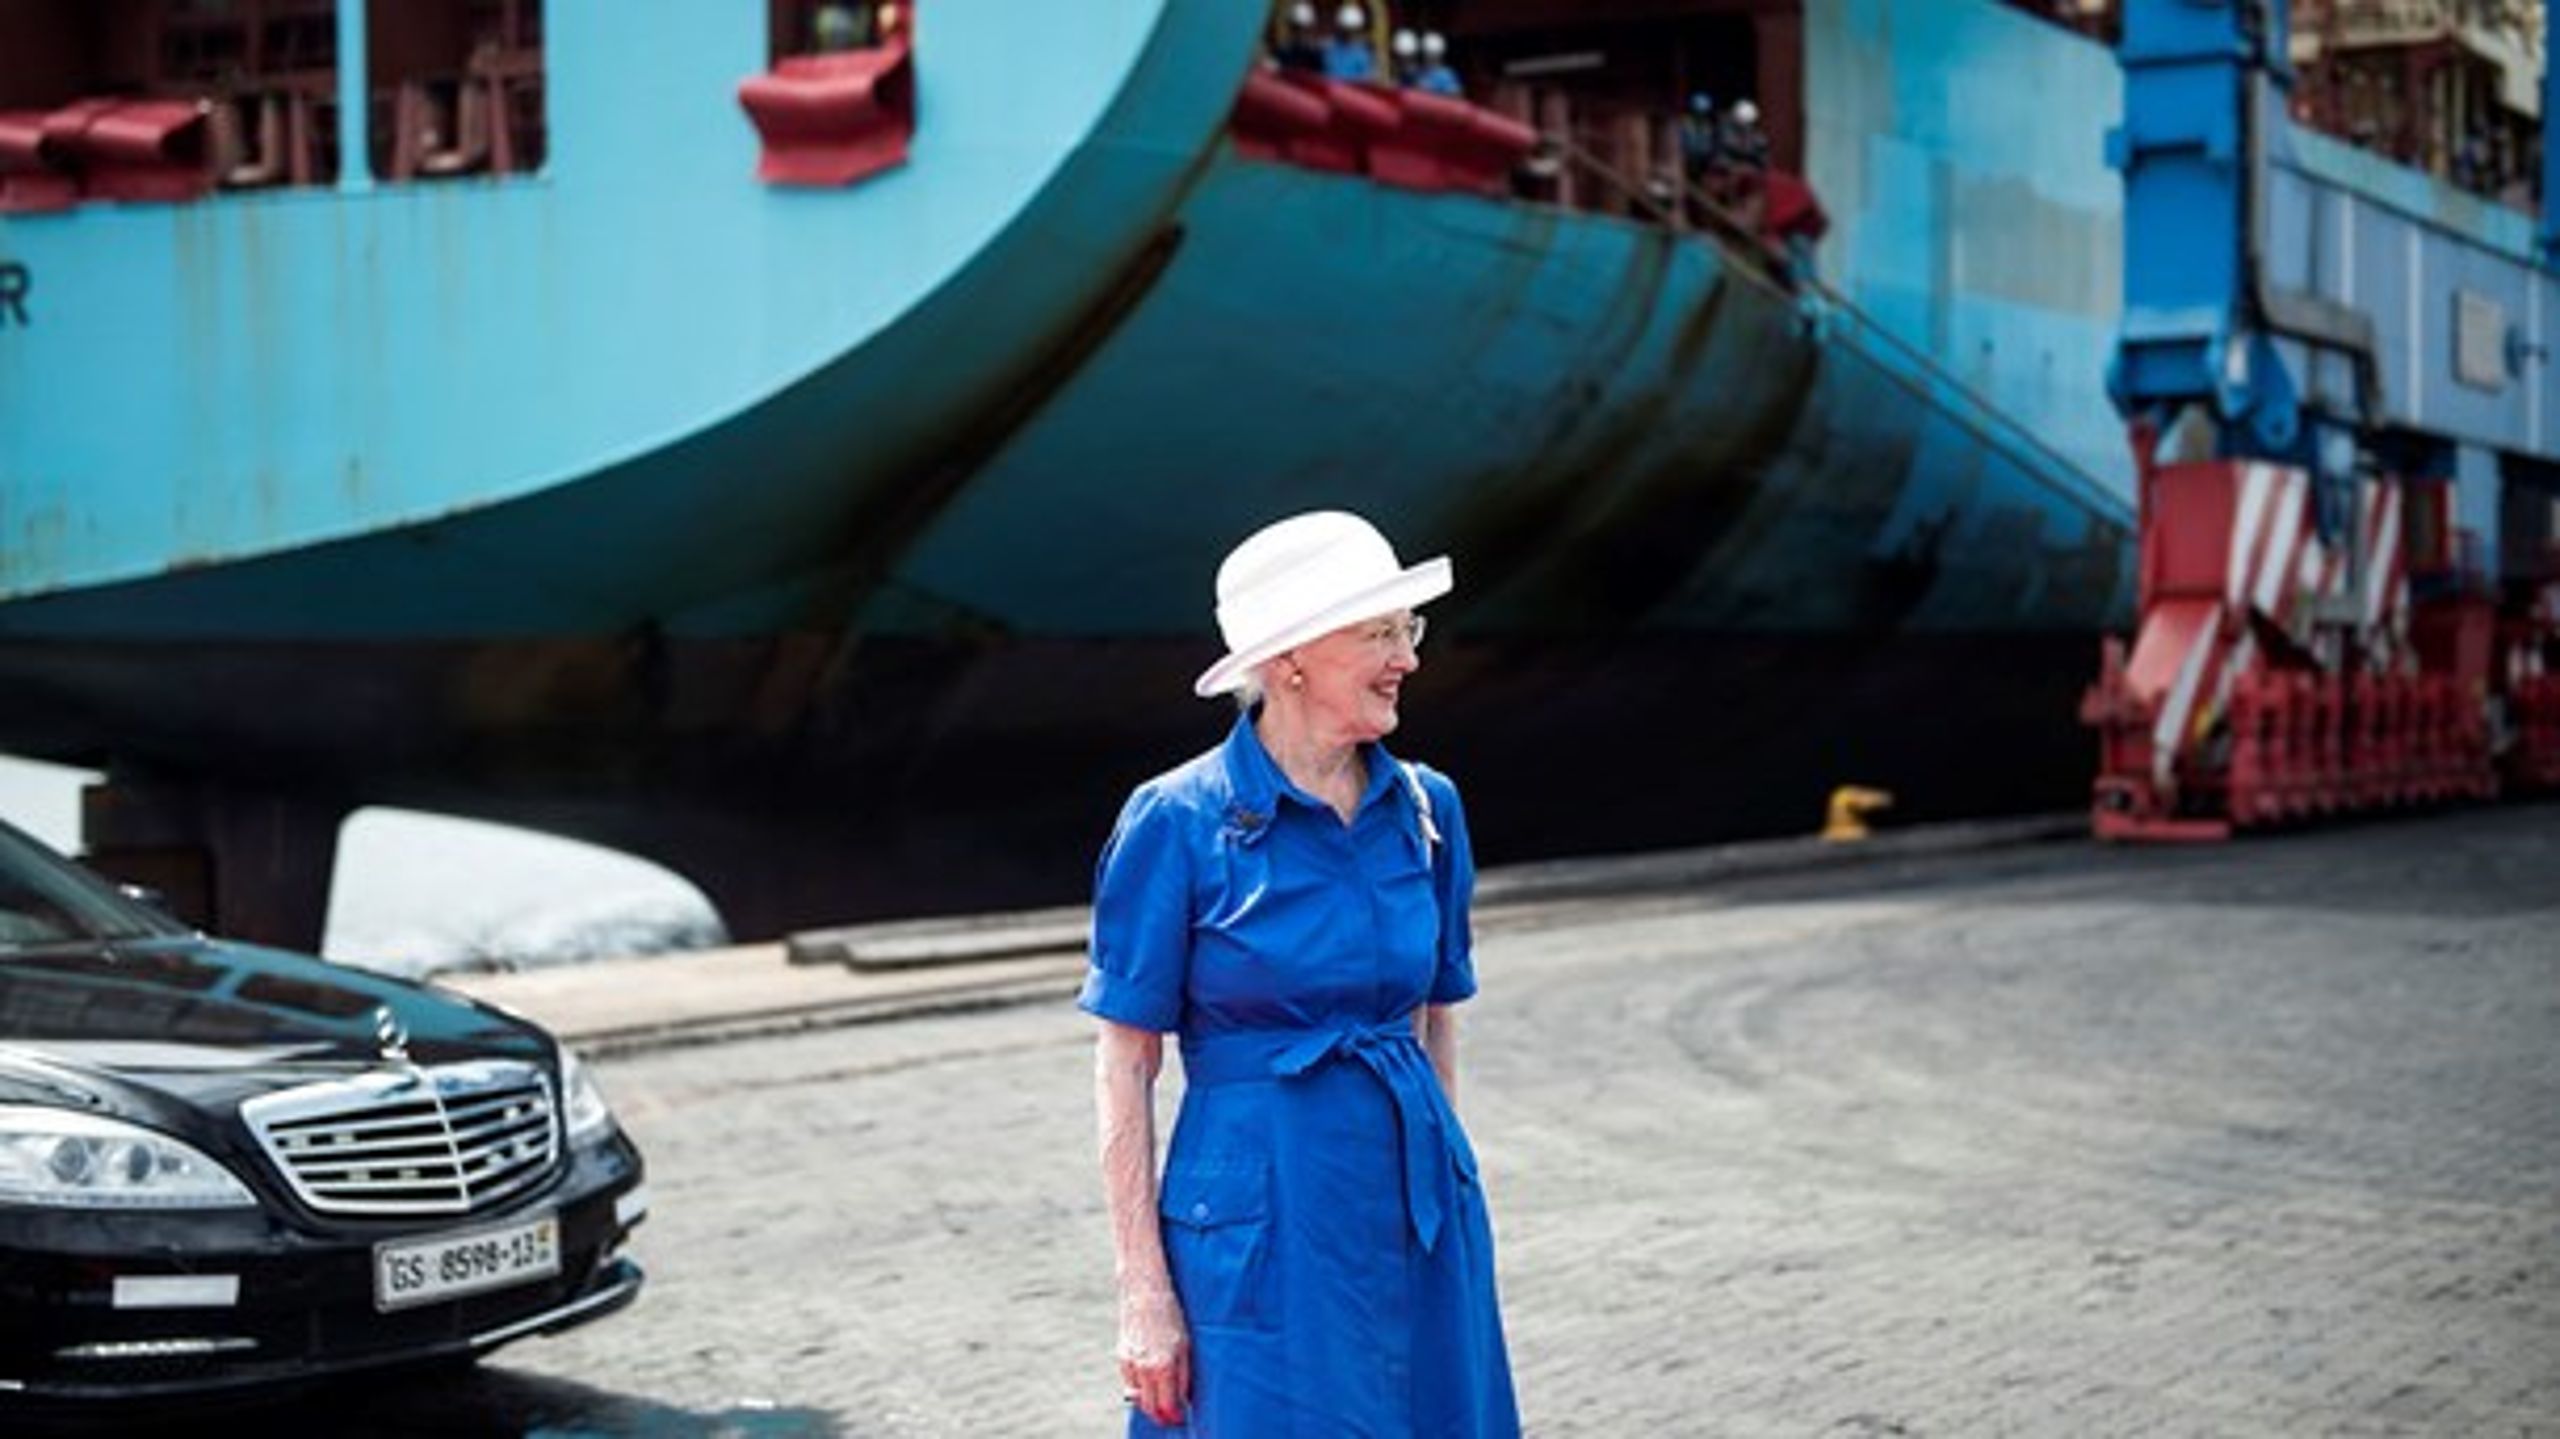 <b>POTENTIALE</b>: I lande som Ghana ser DI's Thomas Bustrup forretningsmuligheder.&nbsp;Dronning Margrethe besøgte Ghanas største containerhavn, der er 37 procent Maersk-ejet, i november 2017.